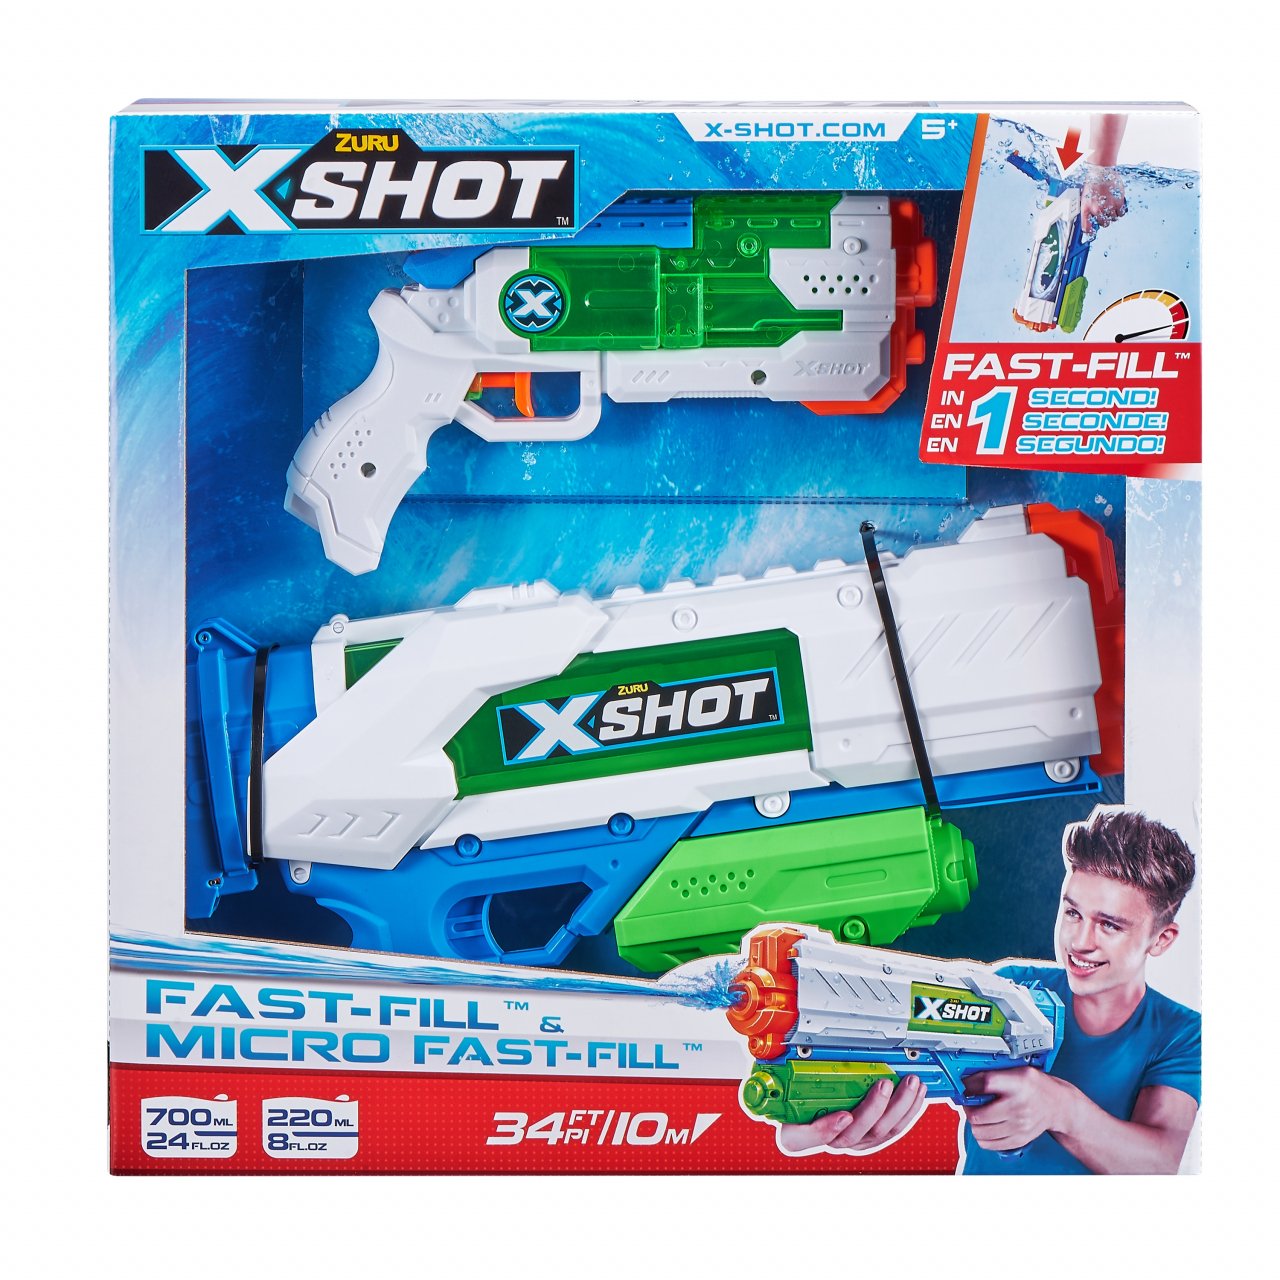 XSHOT žaislinių vandens šautuvų rinkinys Fast- Fill ir Micro Fast-Fill, 56225 - 1